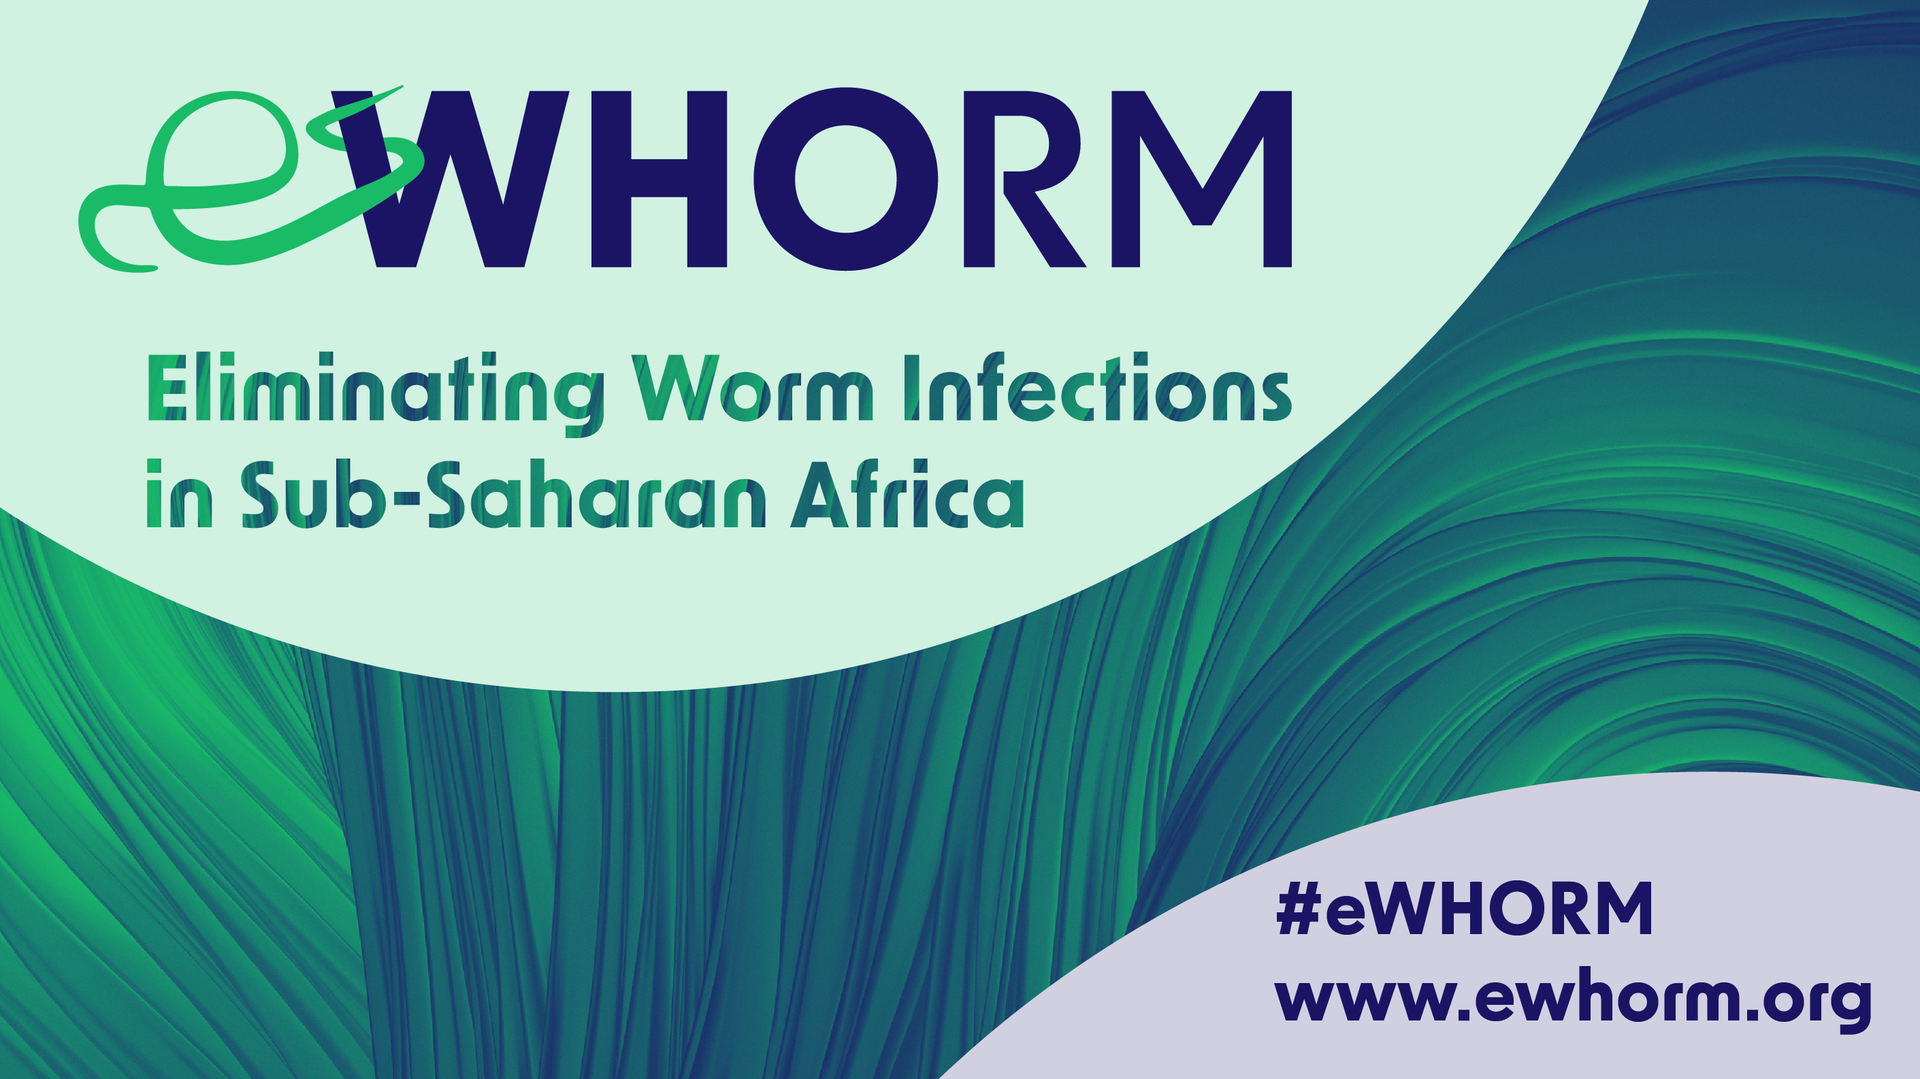 Das internationale eWHORM-Projekt zur Eliminierung von Wurminfektionen in Subsahara-Afrika wird in Bonn koordiniert.